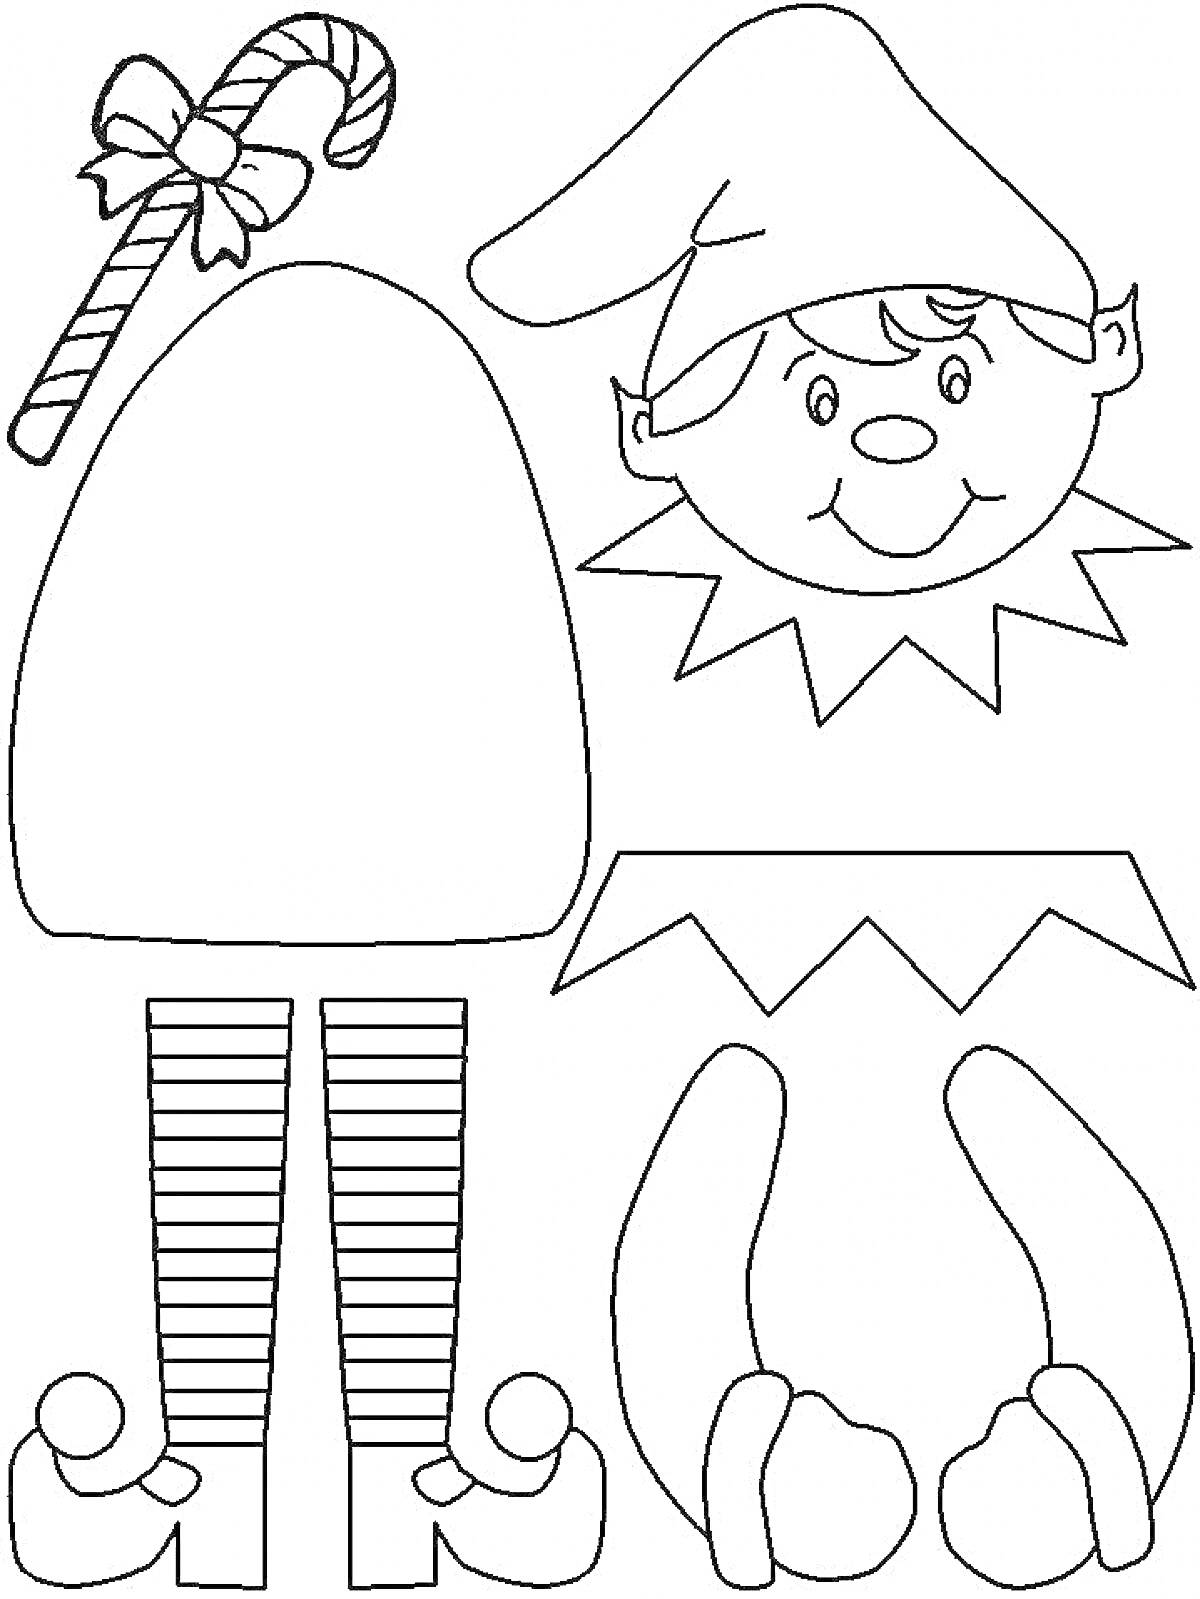 Раскраска Эльф с конфетной тростью (включает элементы: конфетная трость с бантом, шляпа эльфа, голова эльфа с ушами и лицом, тело эльфа, воротник, ноги с полосатыми чулками, руки с варежками)